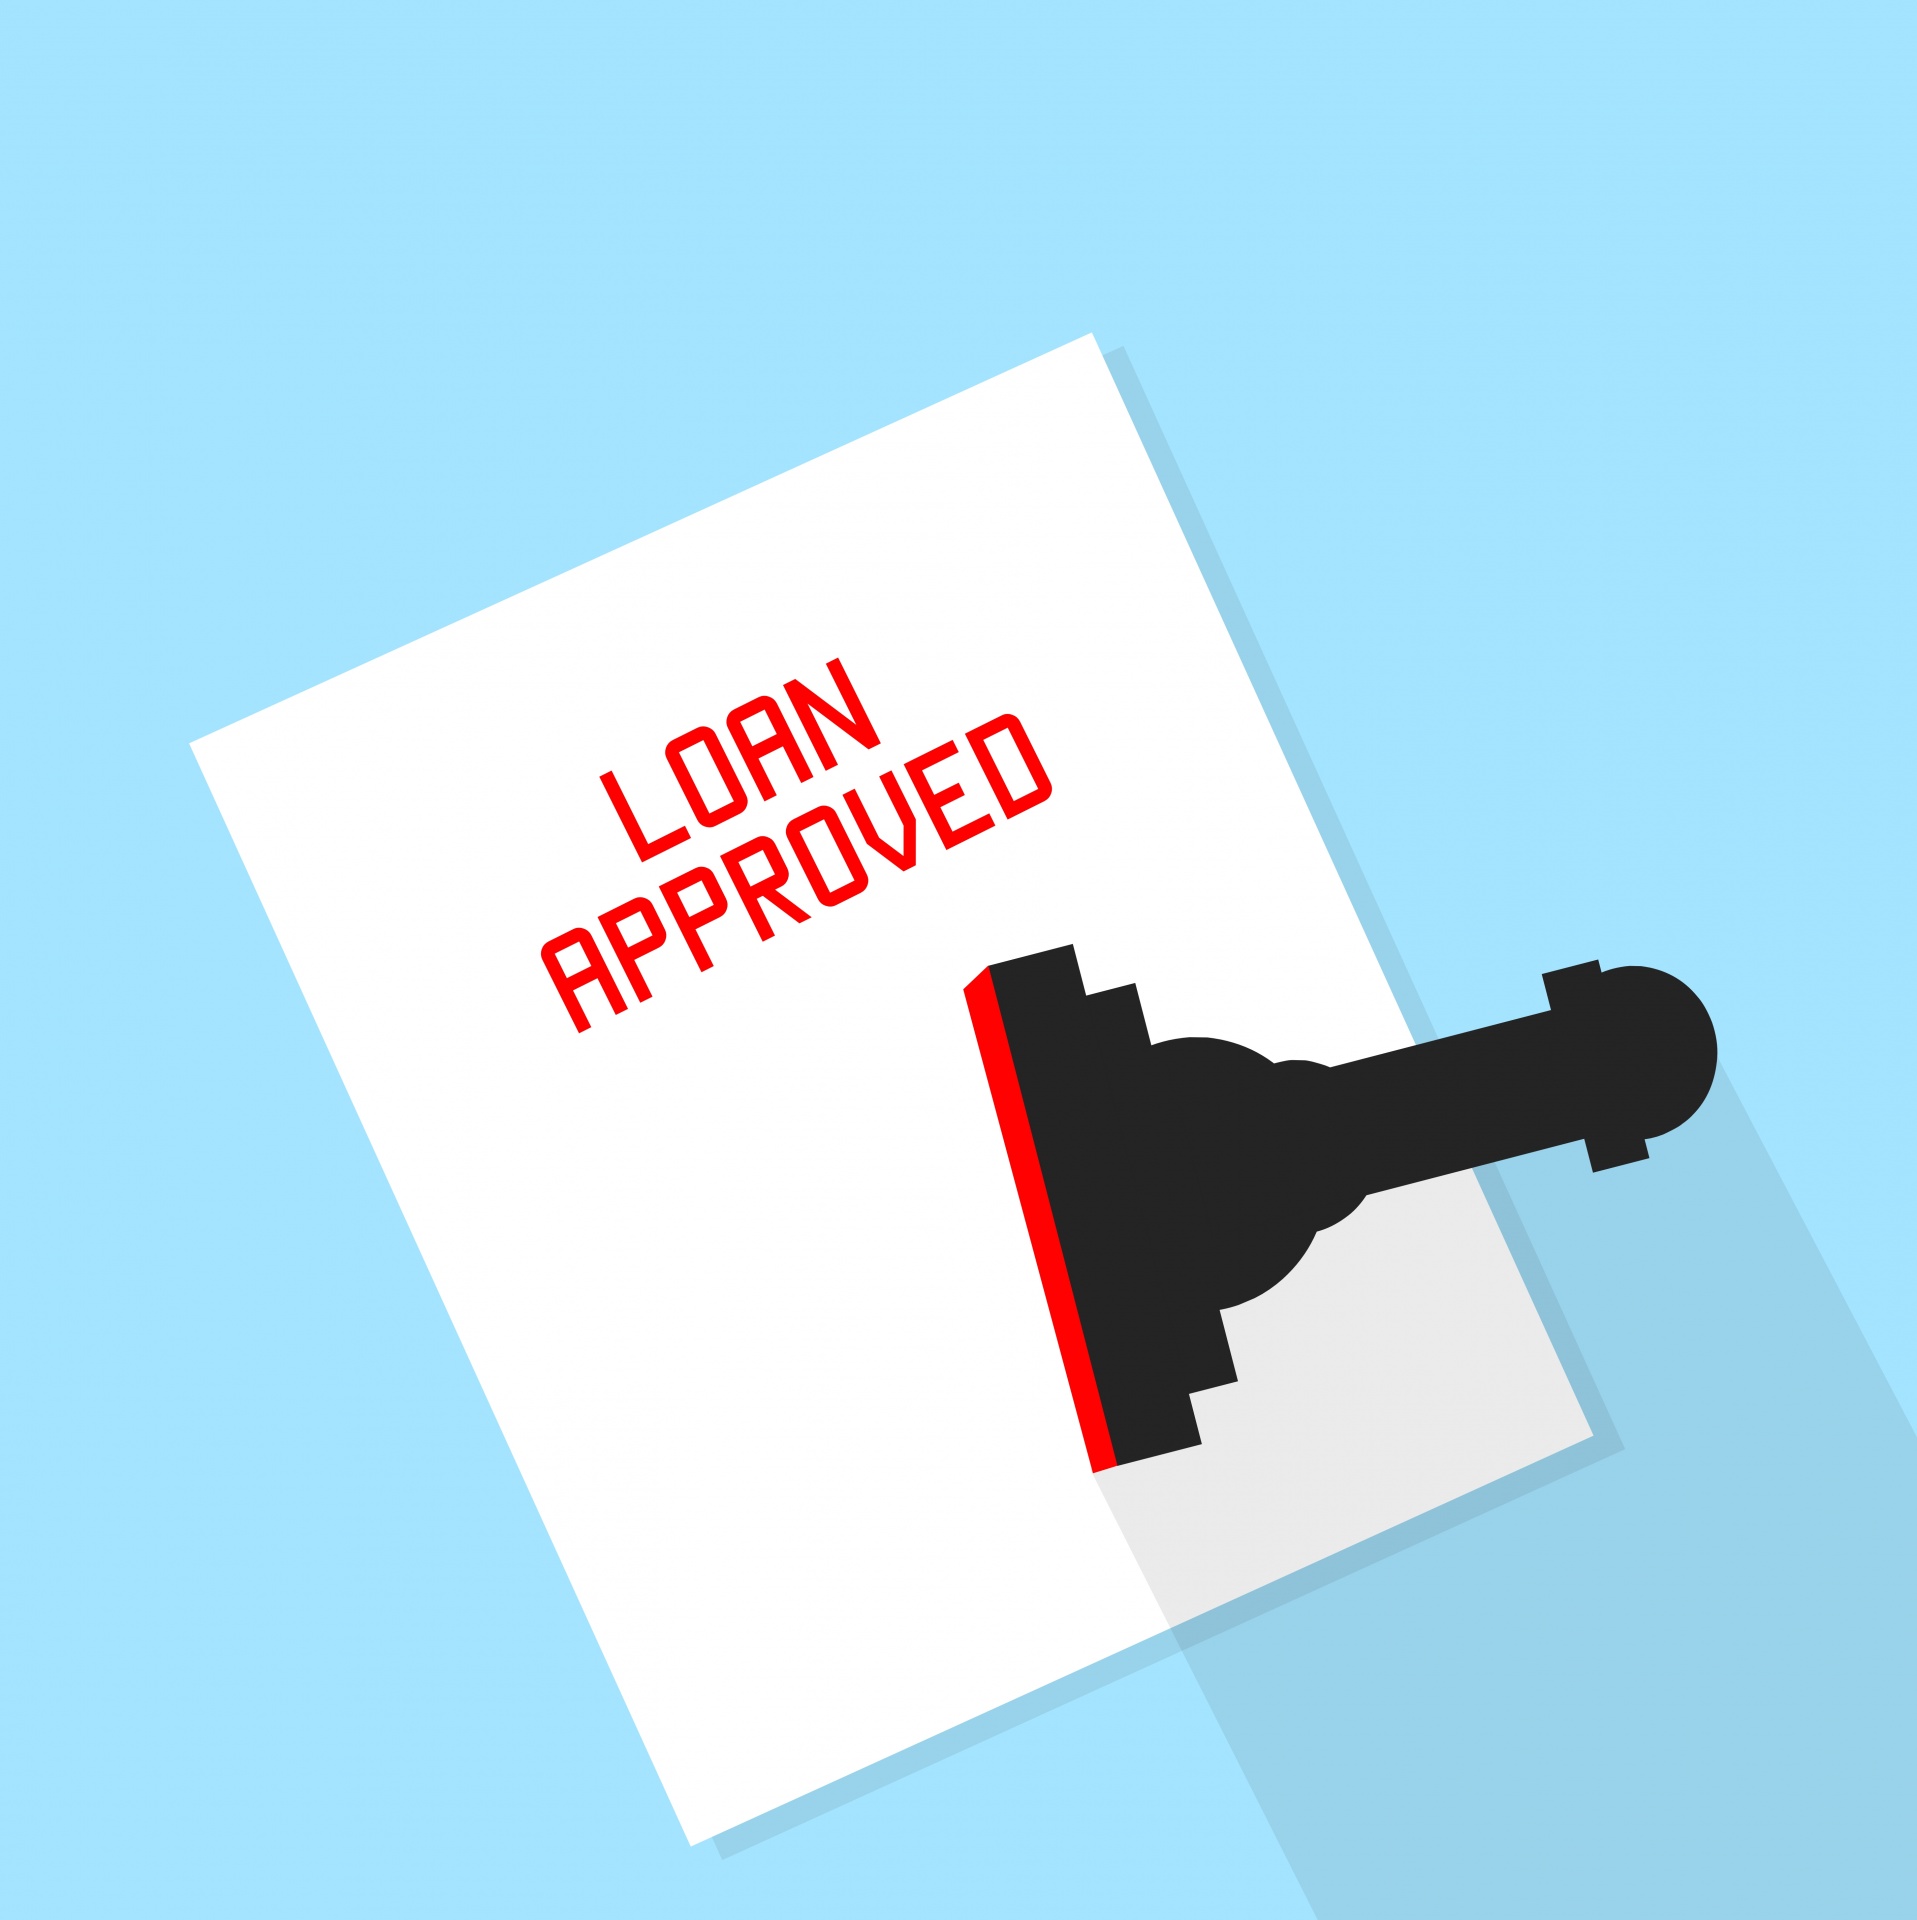 Loan Approval